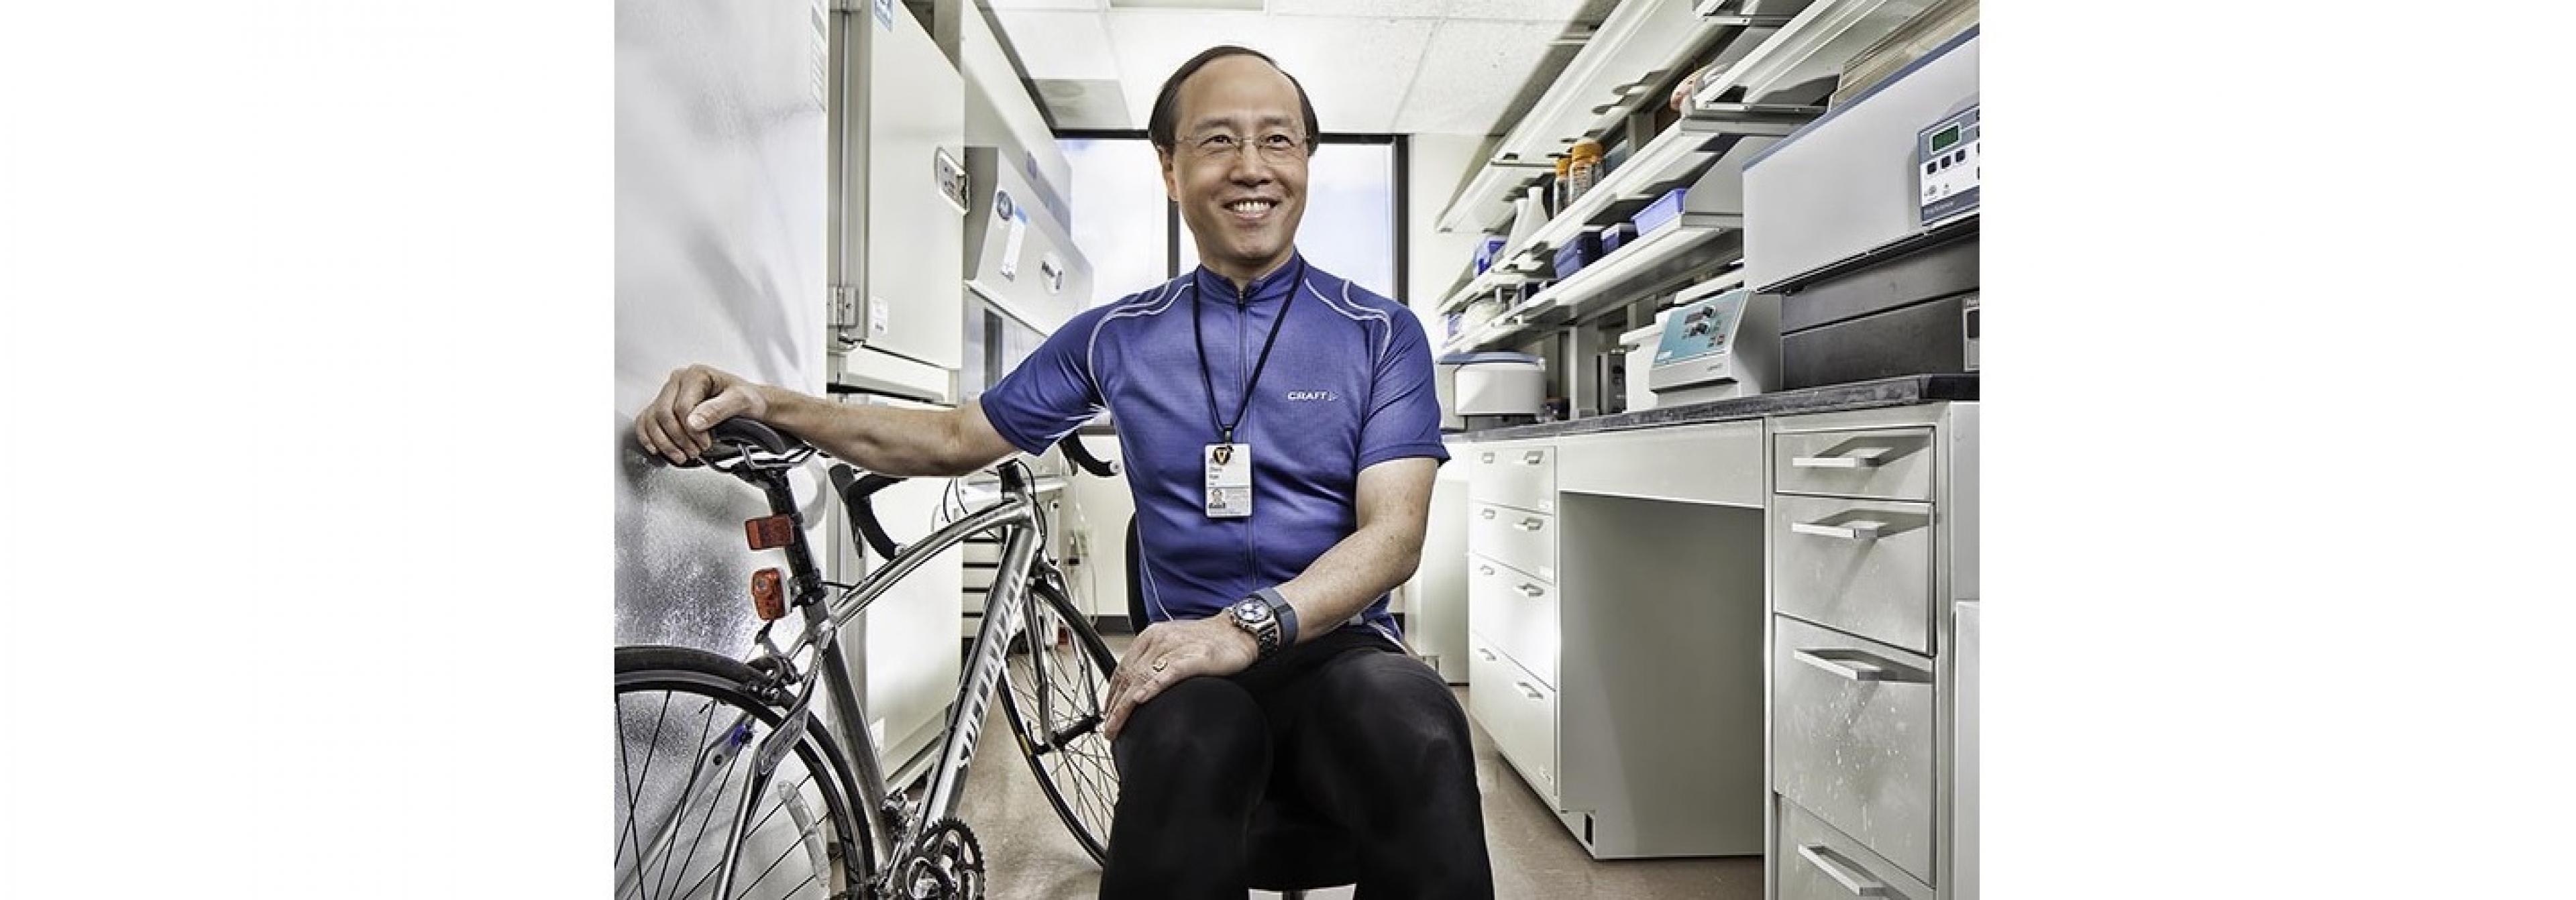 Ein sportlicher mittelalter Wissenschaftler in seinem Labor. Er hat ein Fahrradtrikot an. Neben ihm steht sein Rennrad.